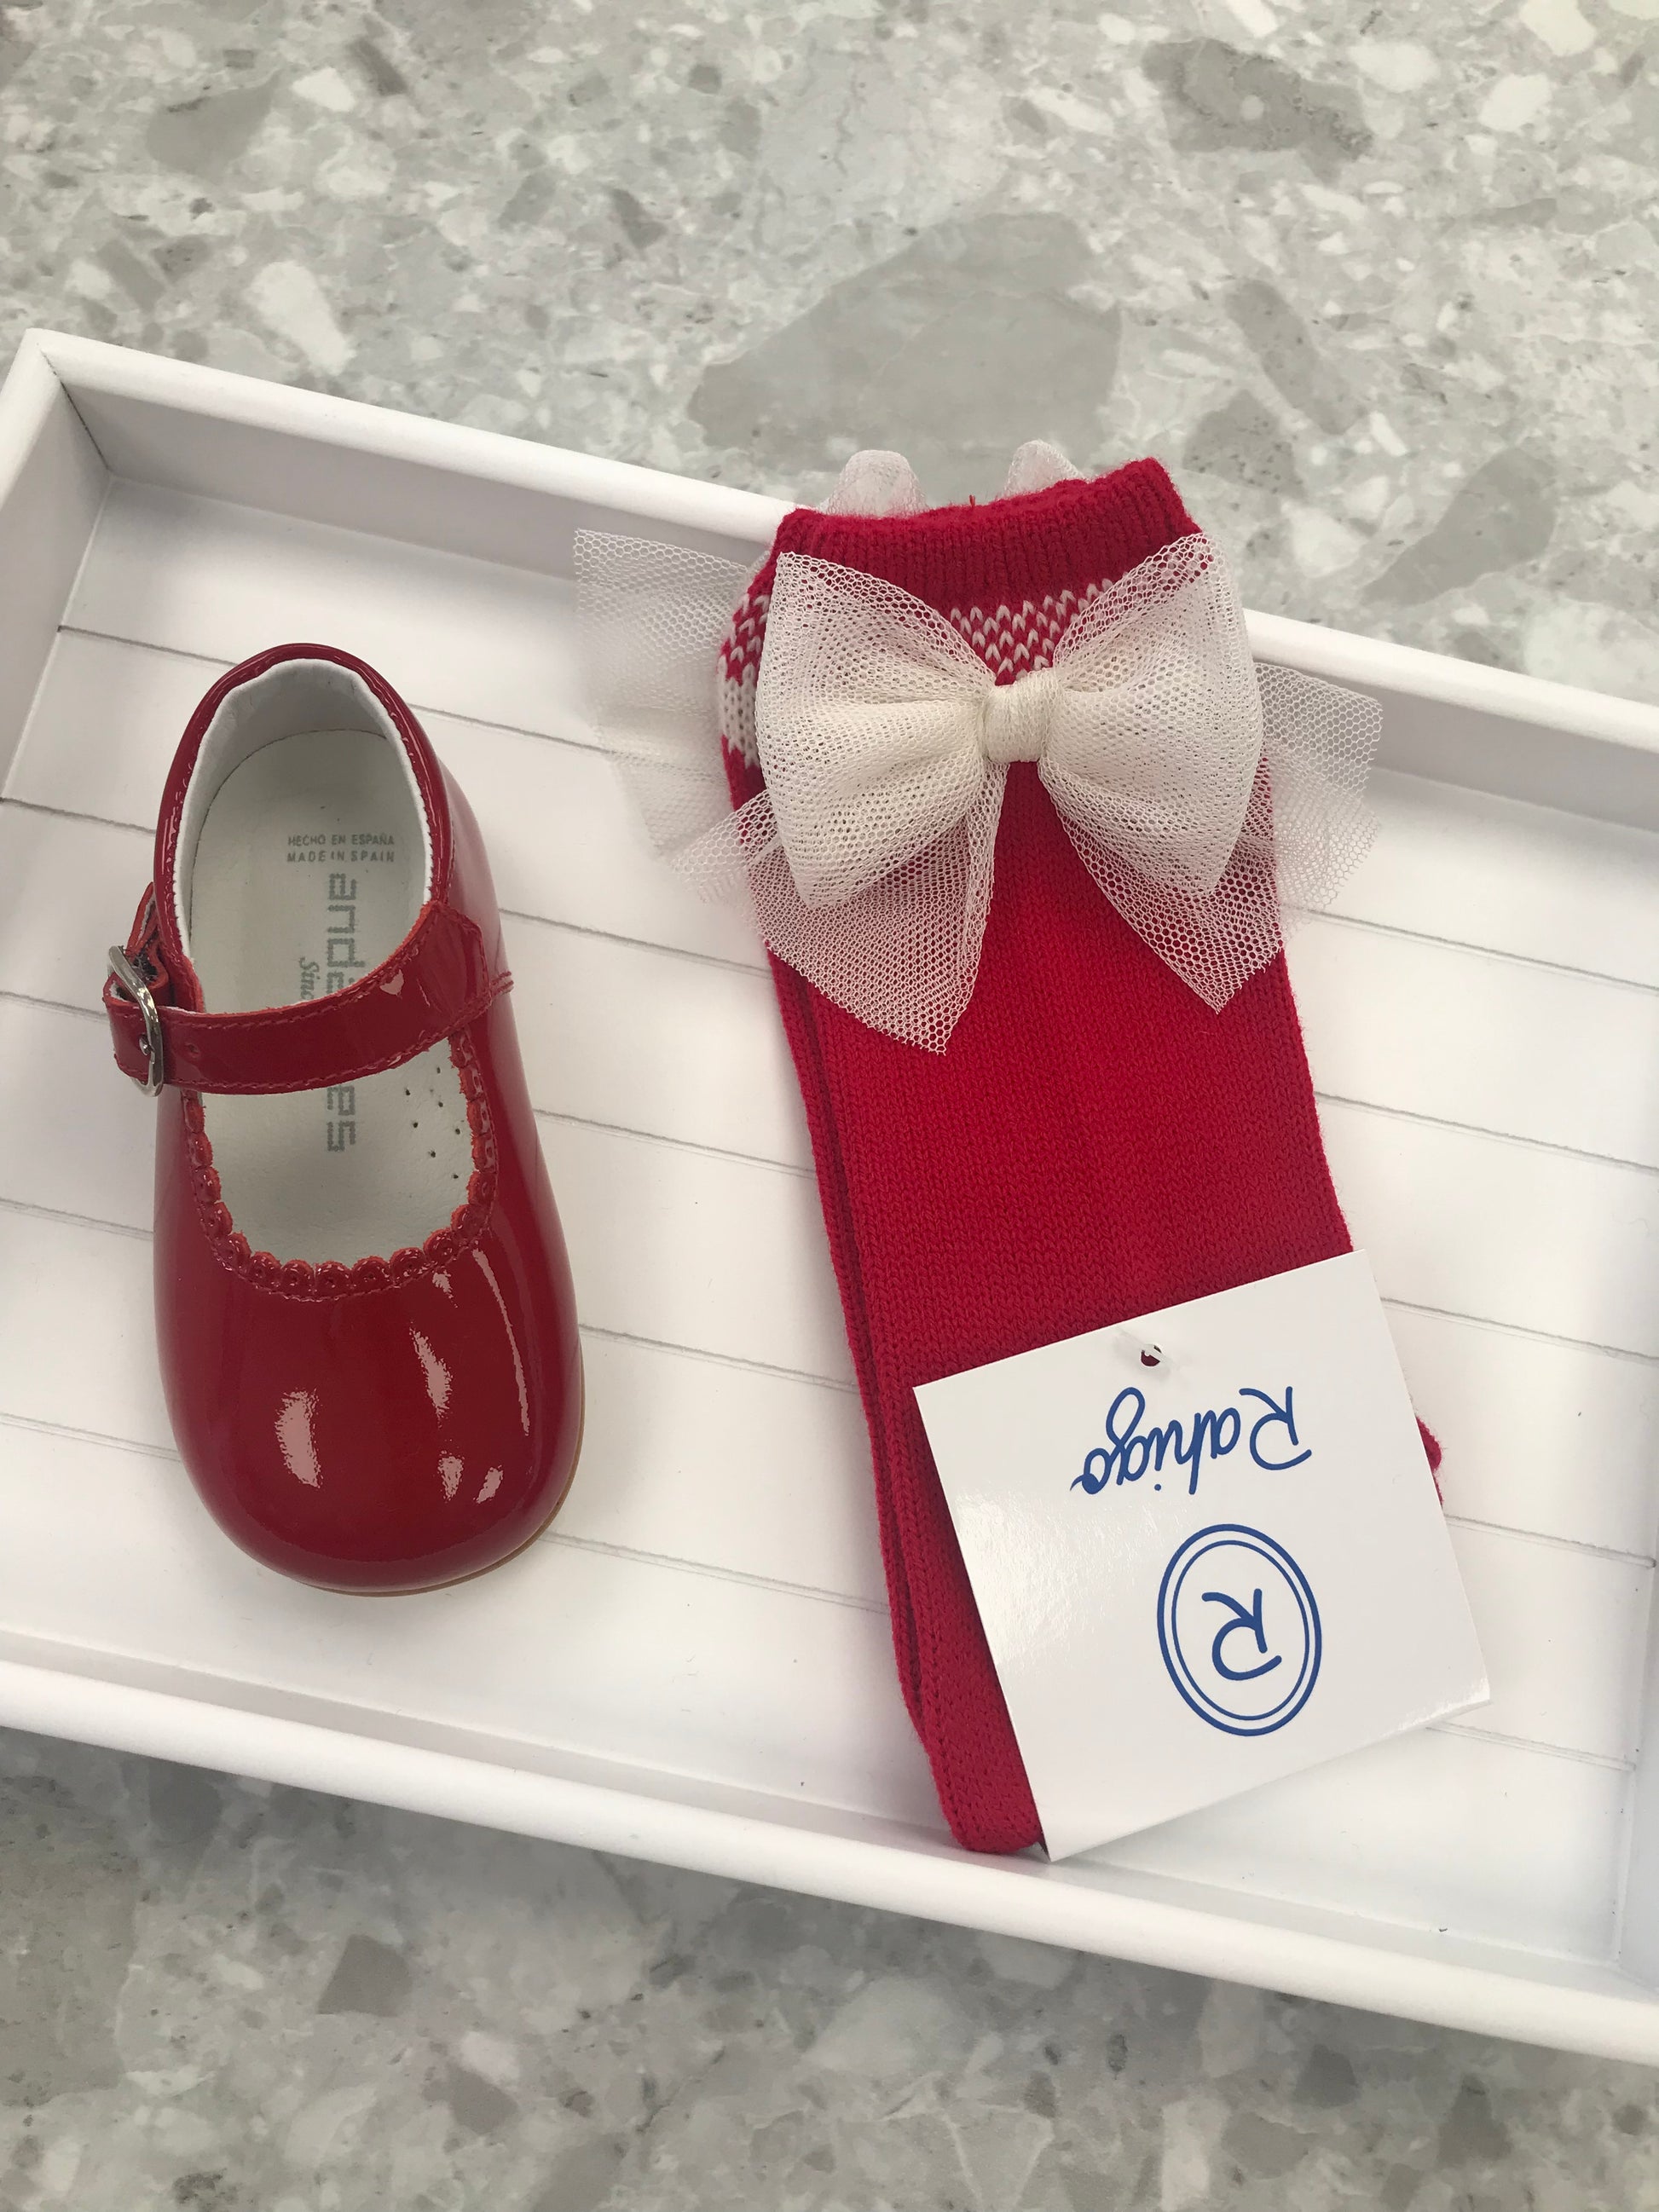 RAHIGO Red & Cream Girls Tulle Bow Socks - 23290